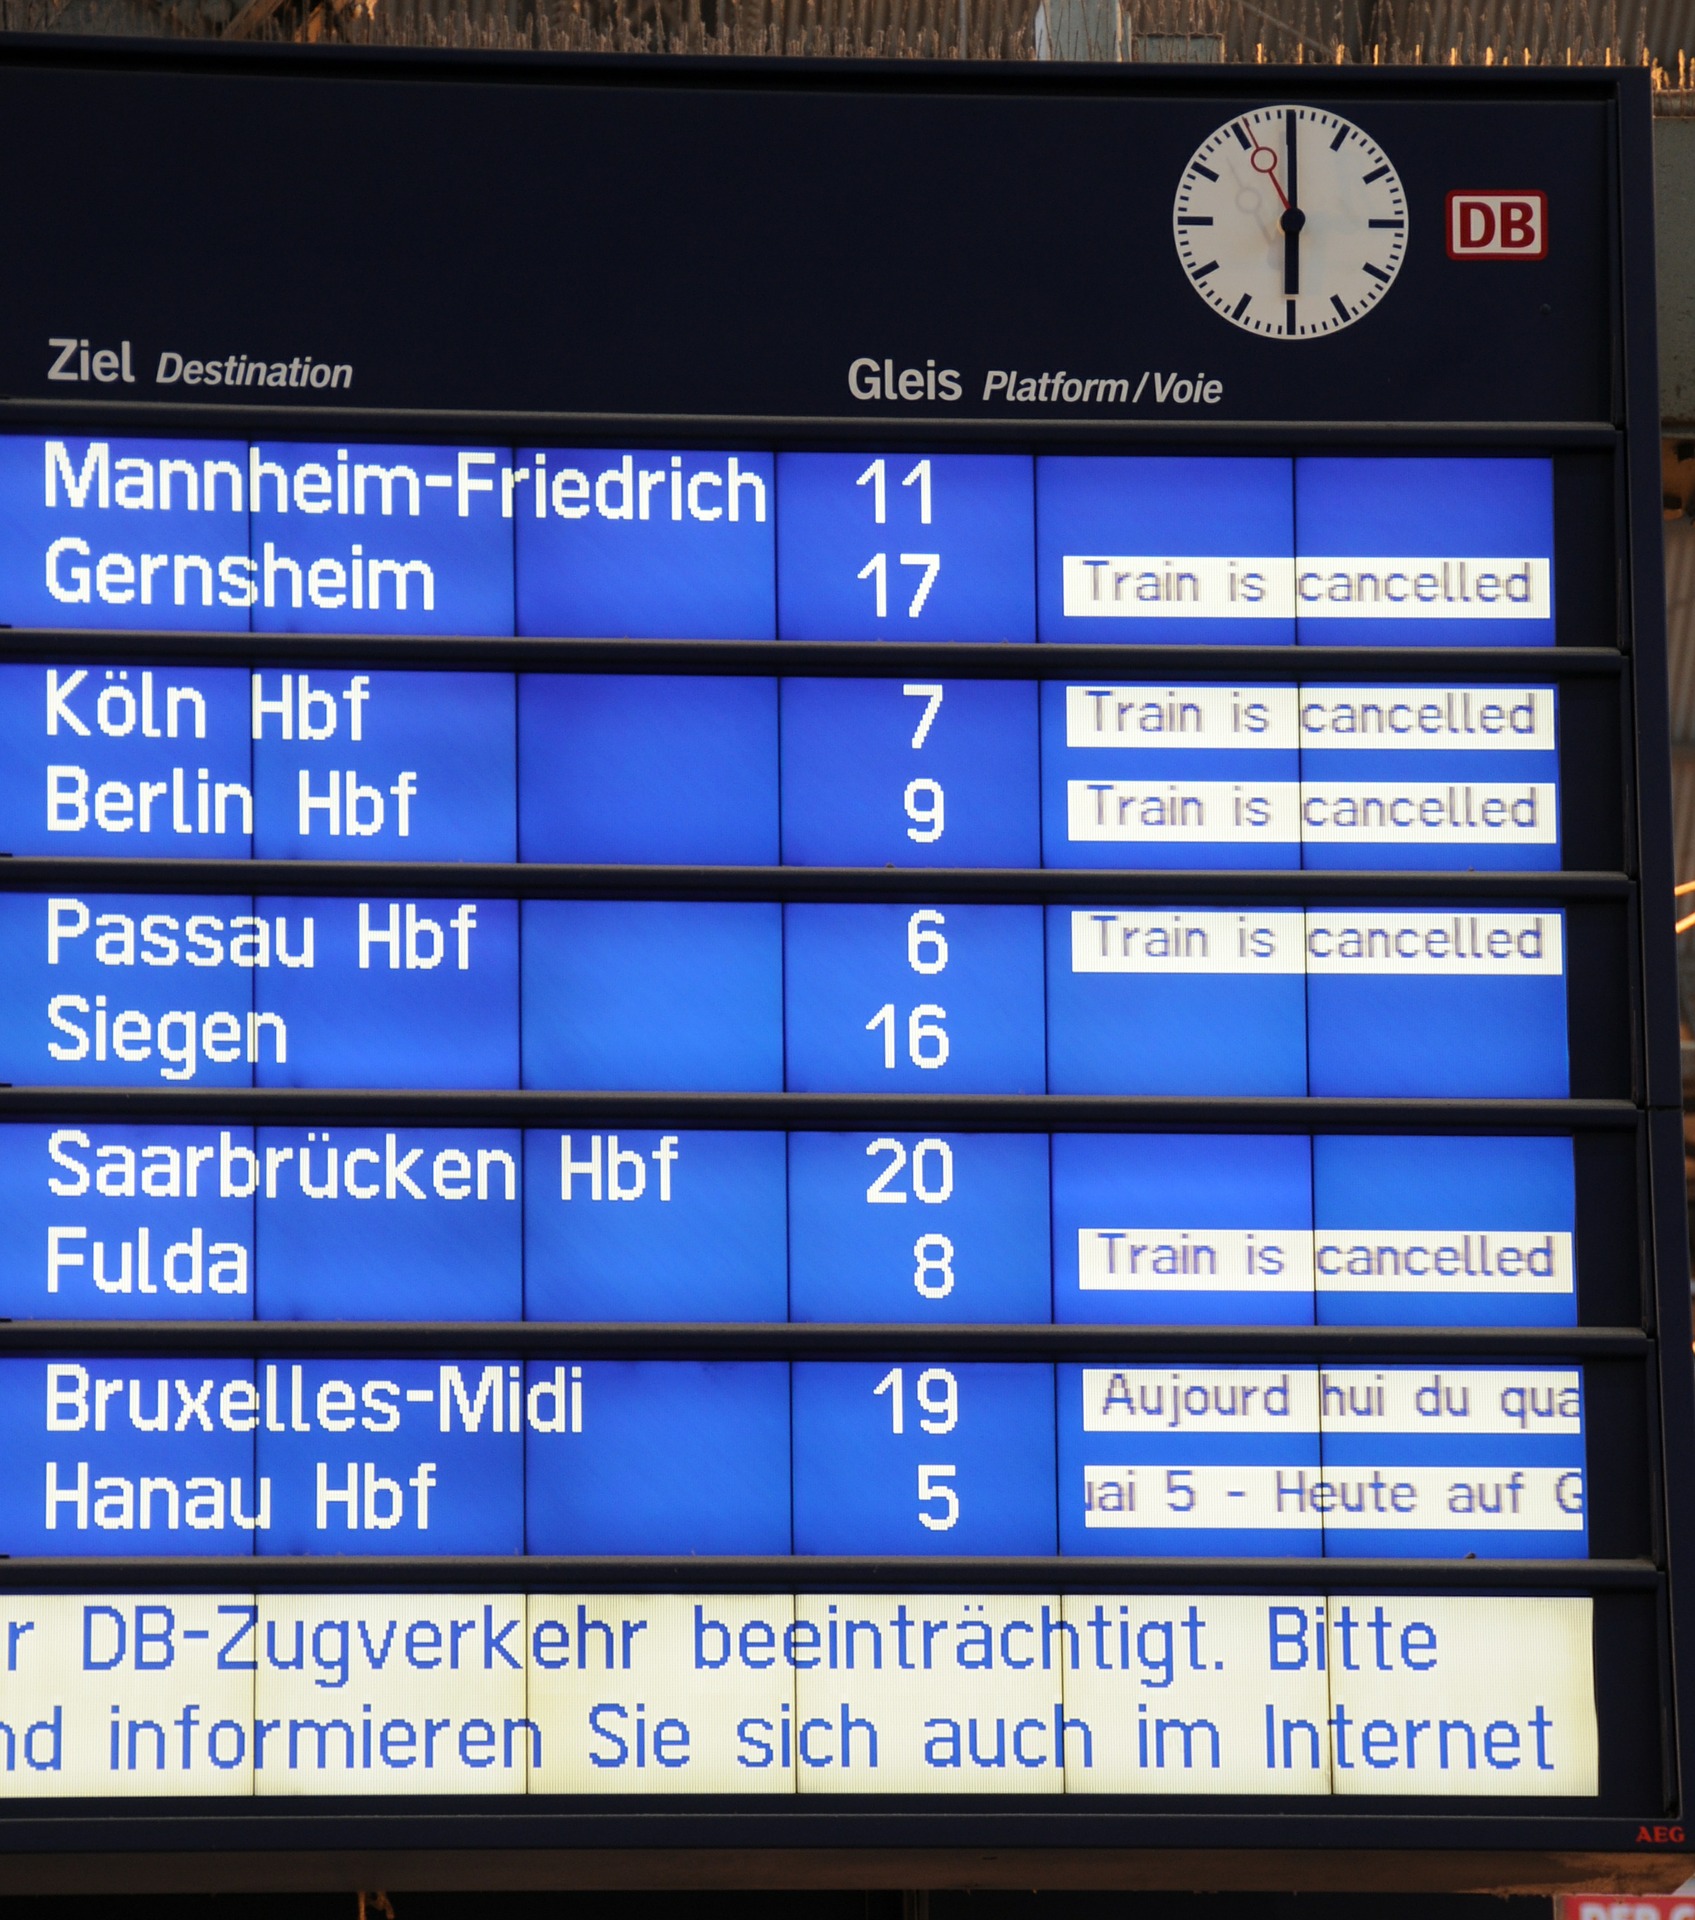 Streik der deutschen Bahn: Was ist ein Streik?